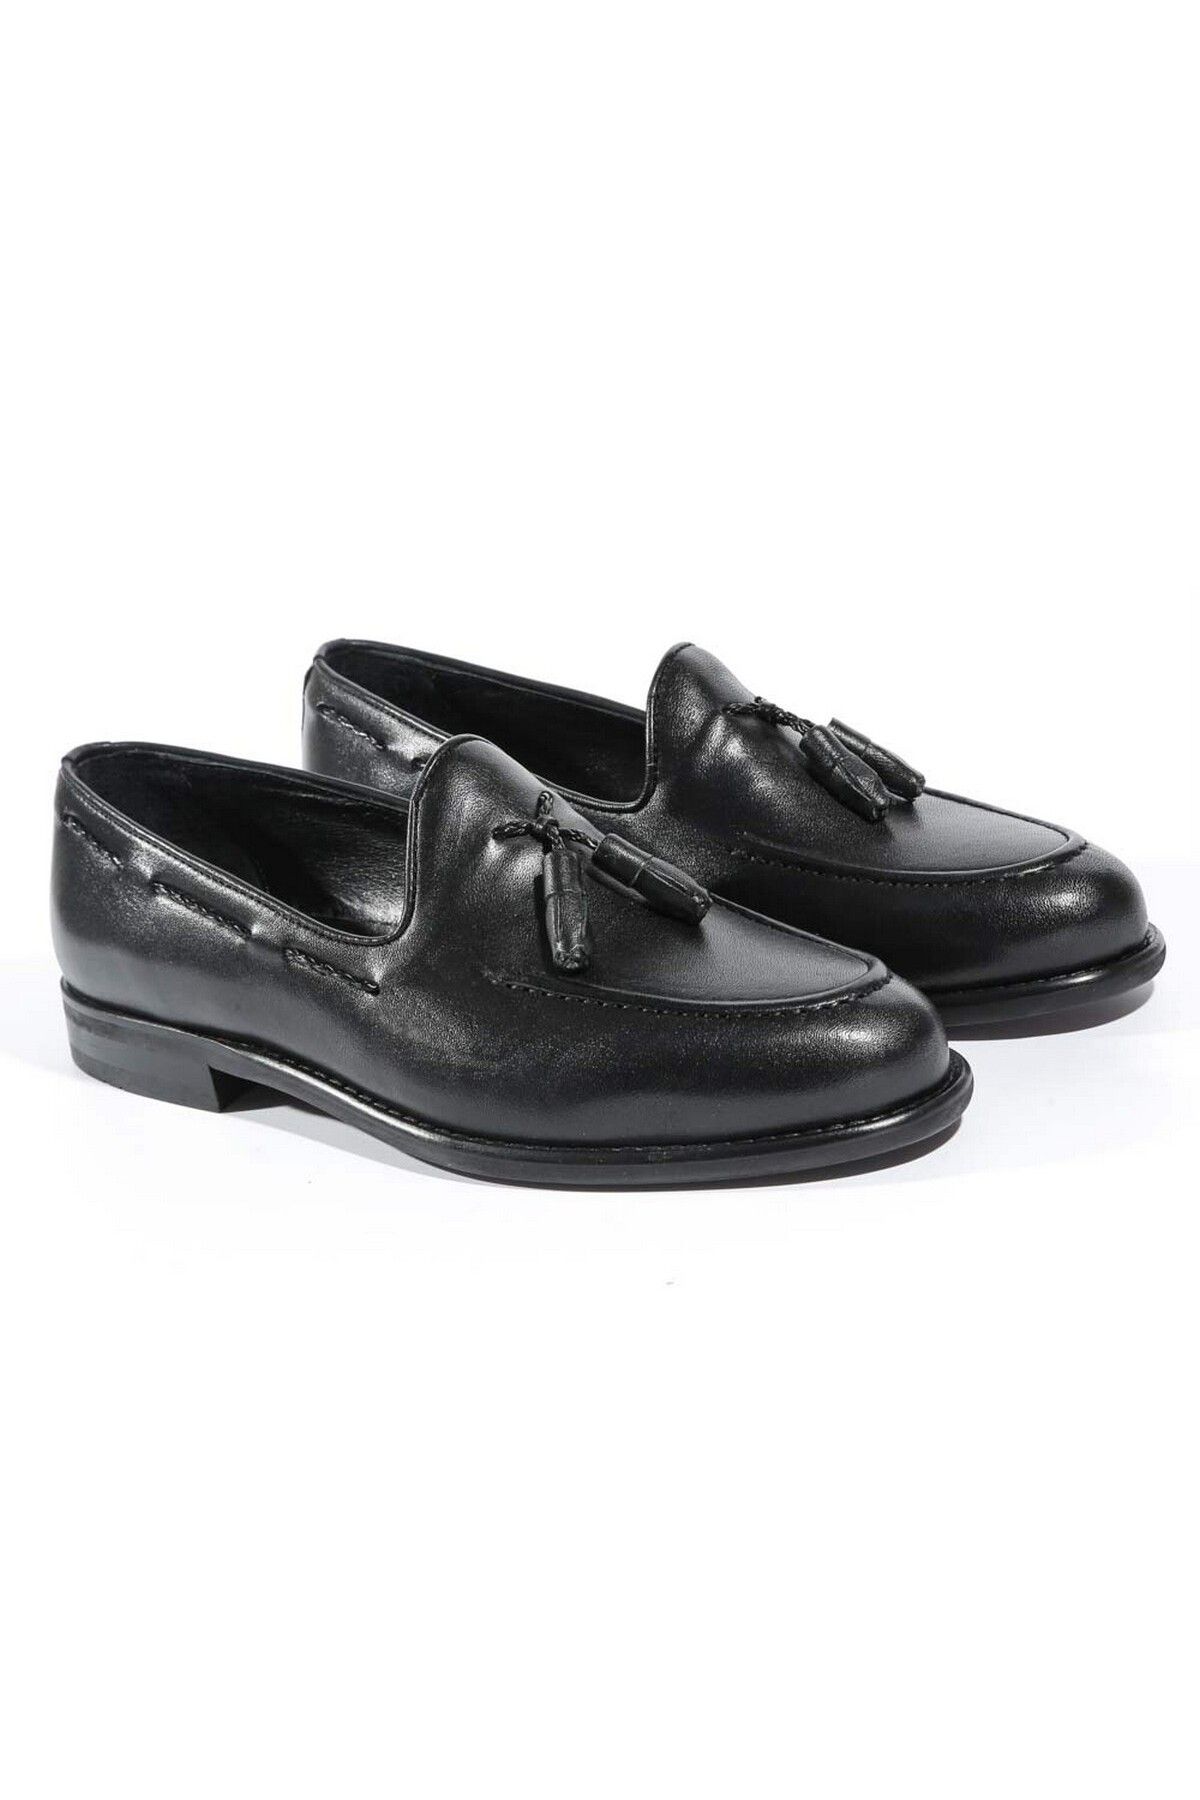 Tetri Gerçek Deri Erkek Parlak Siyah Loafer - Erkek Siyah Casual Ayakkabı - Antik Model